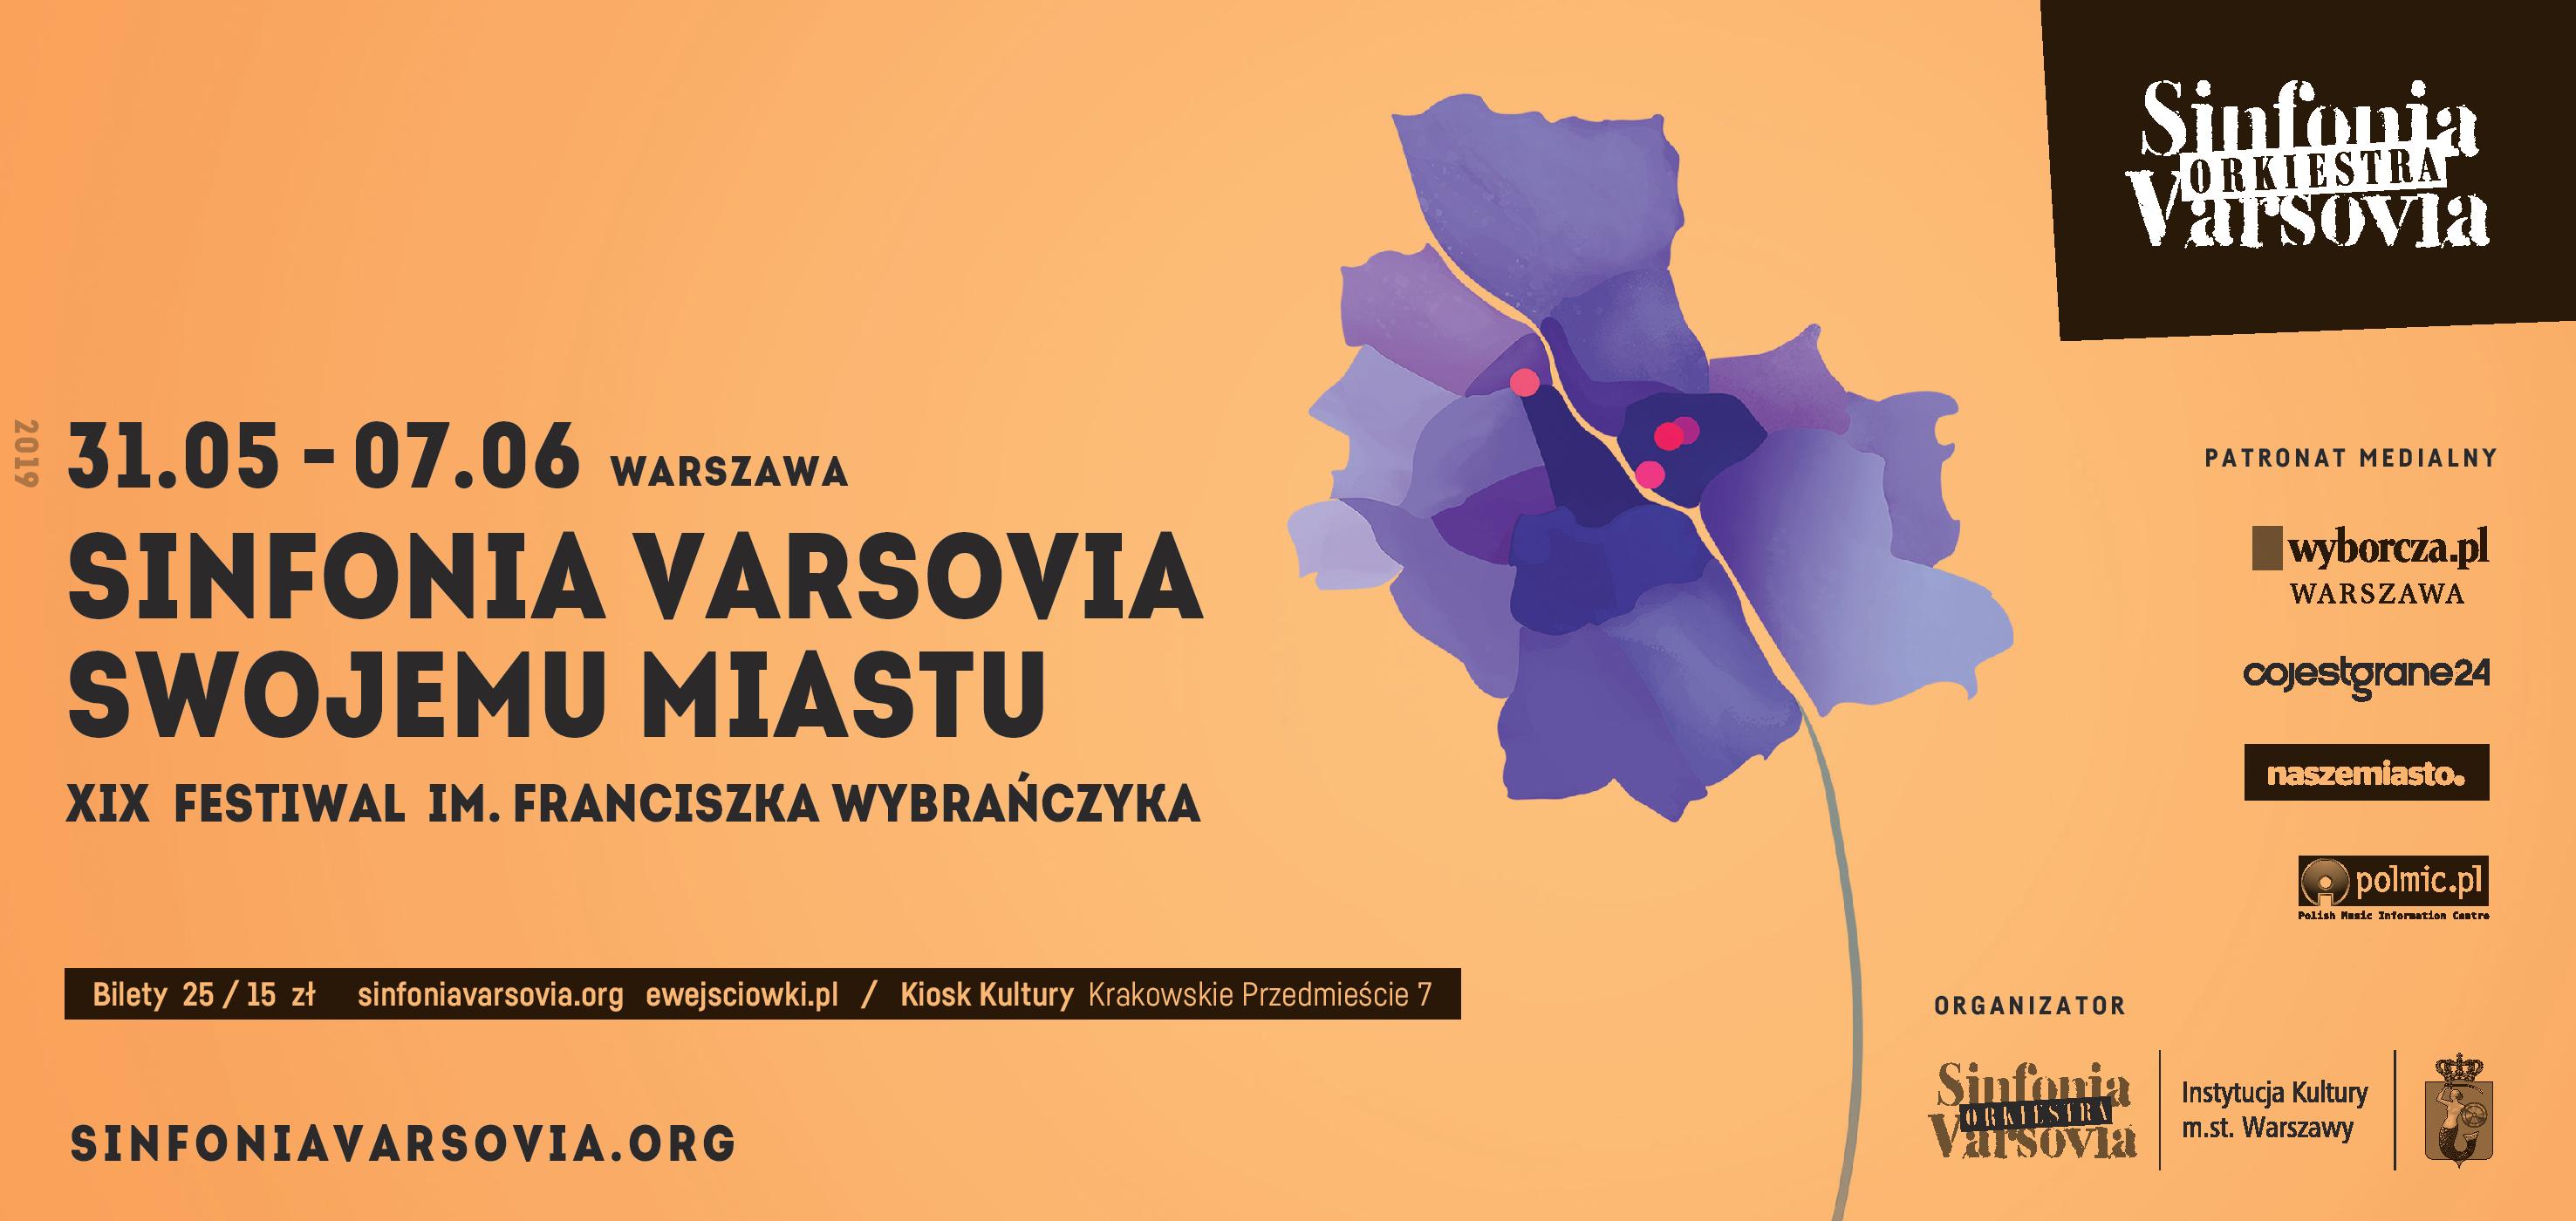 XIX Festiwal im. Franciszka Wybrańczyka Sinfonia Varsovia Swojemu Miastu